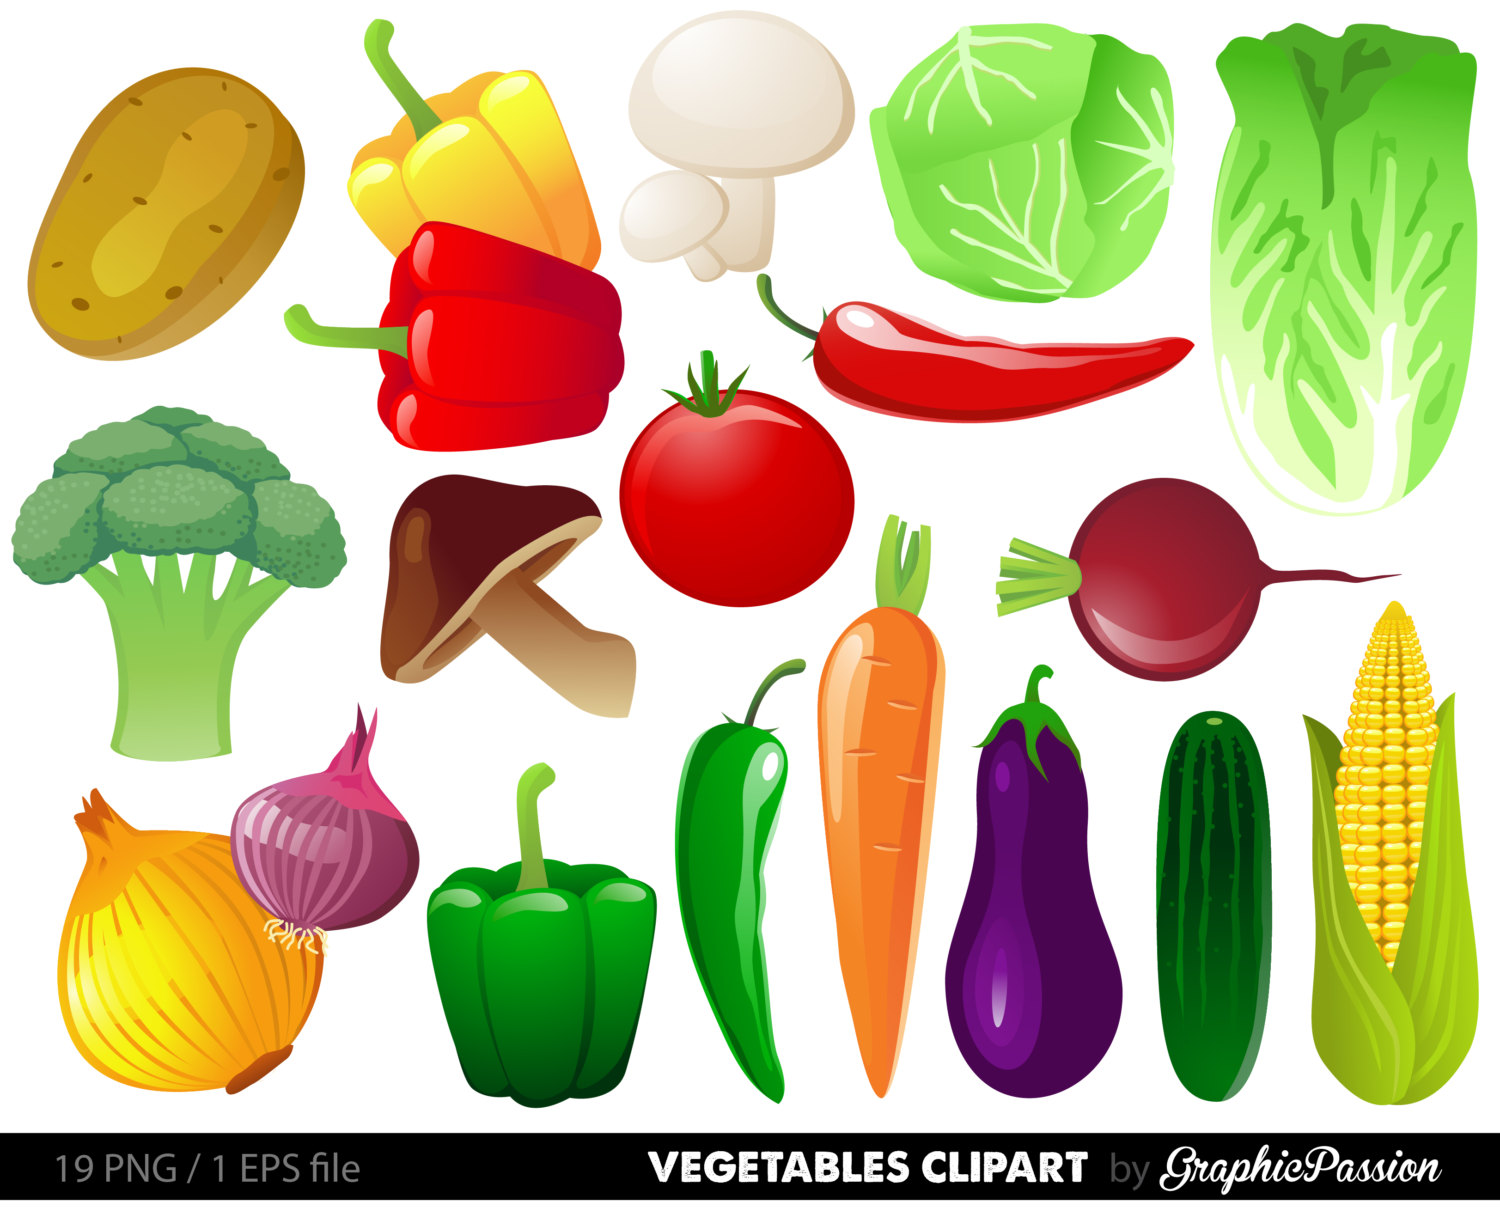 Vegetables clipart digital ve - Vegetables Clip Art